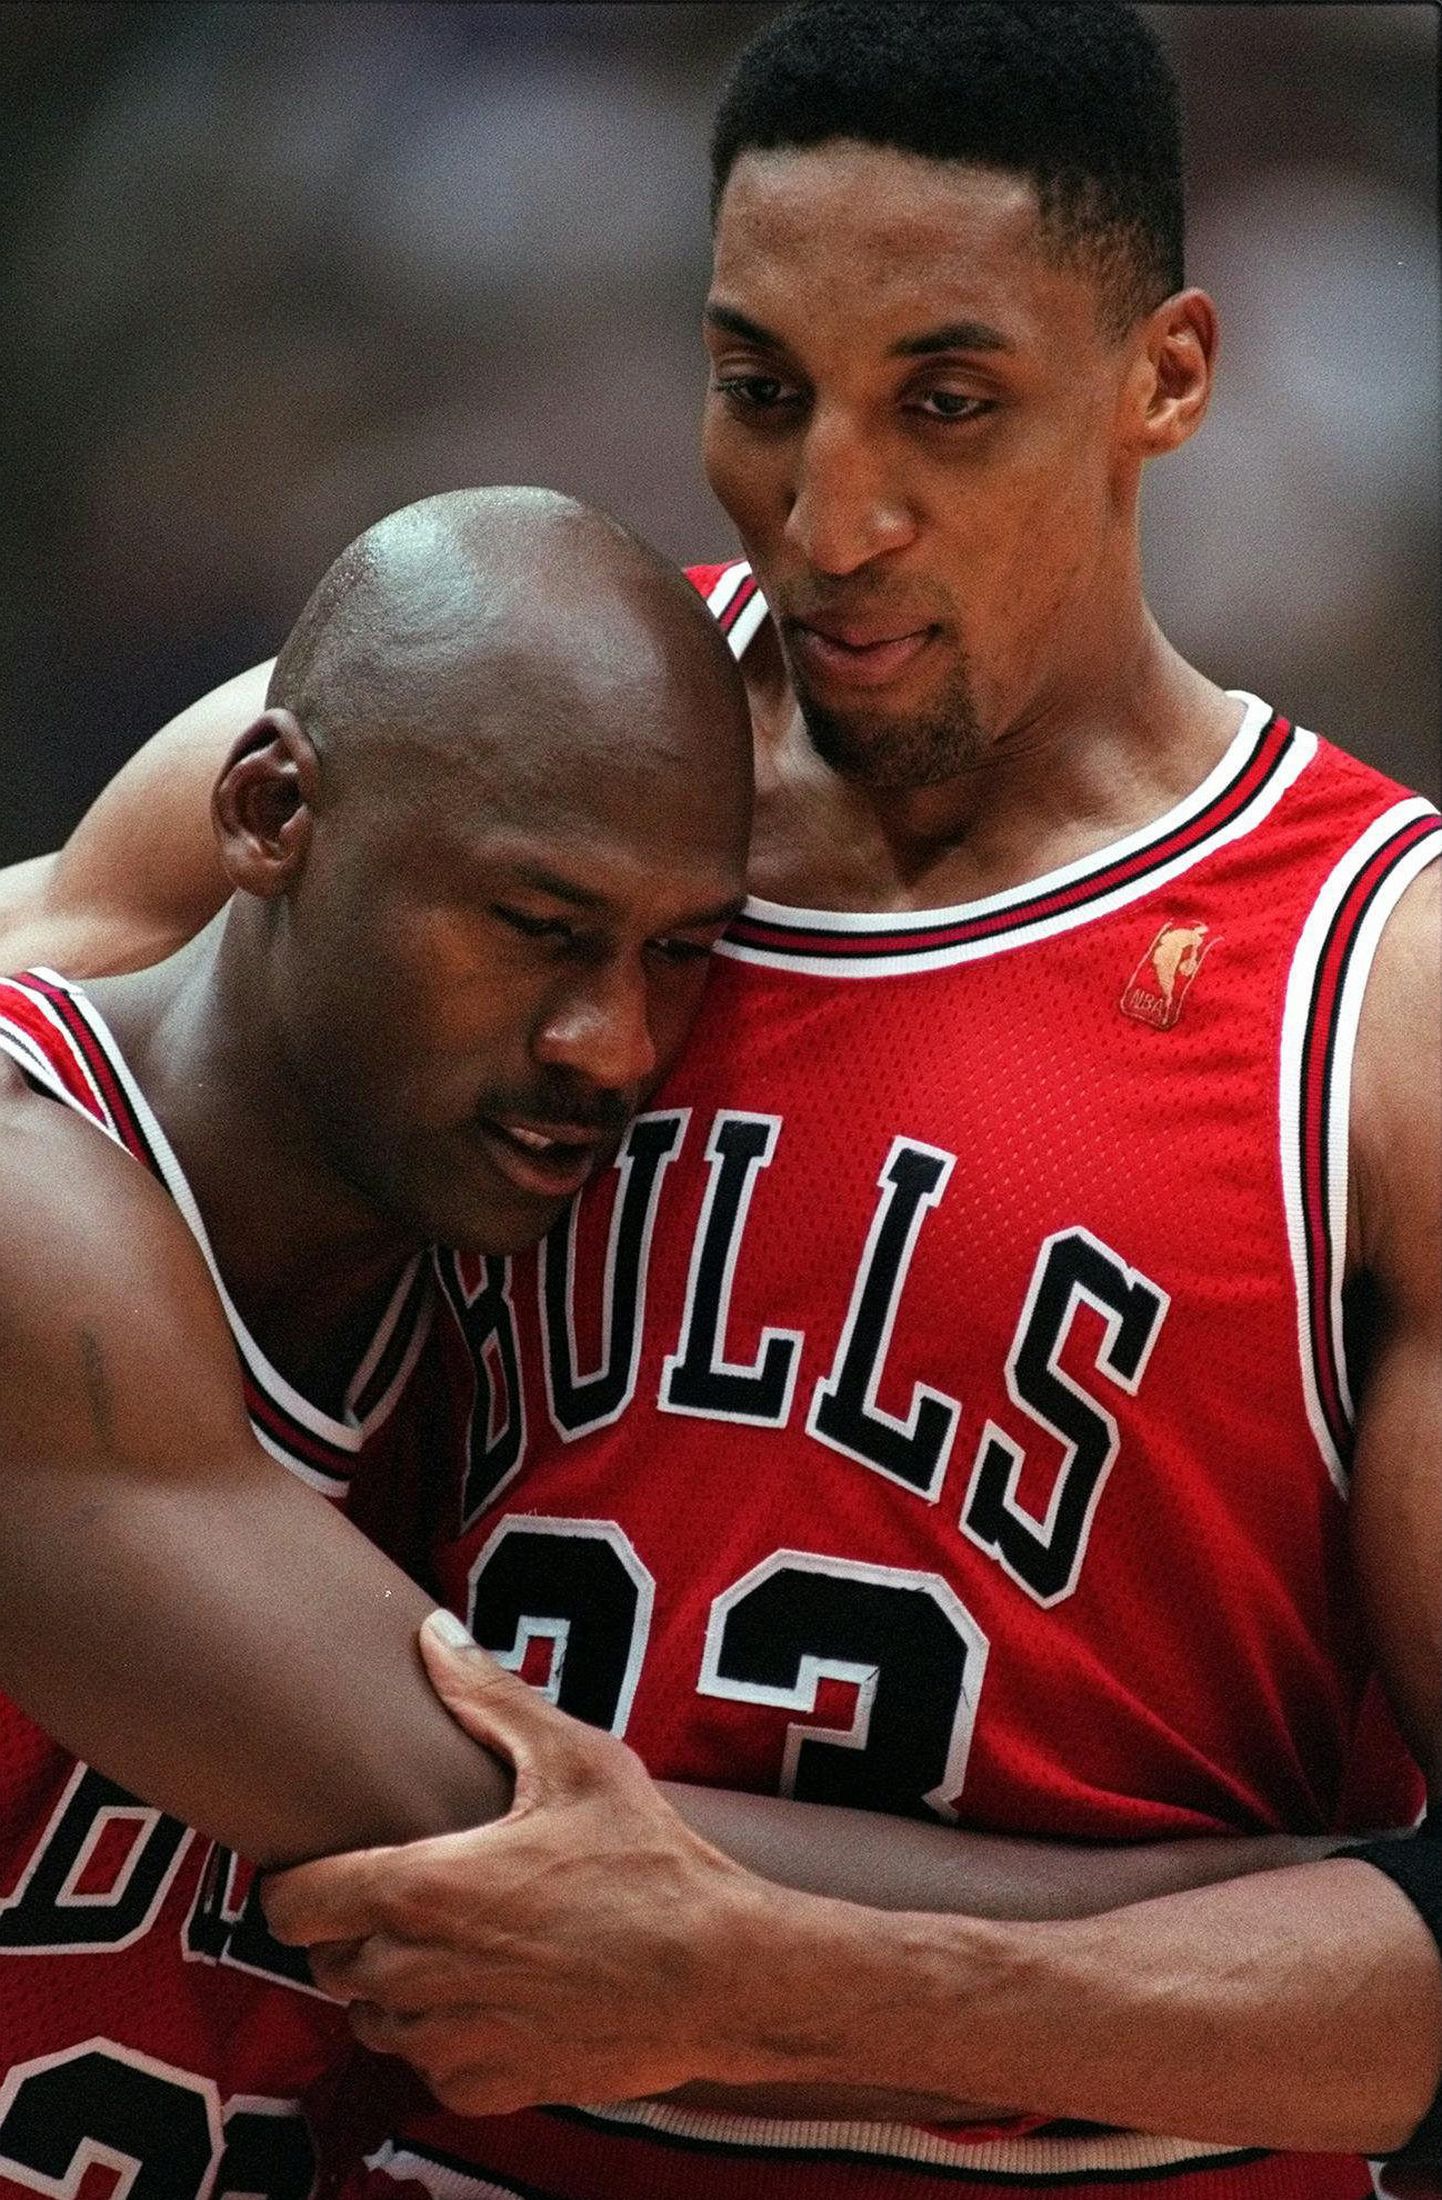 Michael Jordan vajas väljakult lahkumiseks Scottie Pippeni tuge.